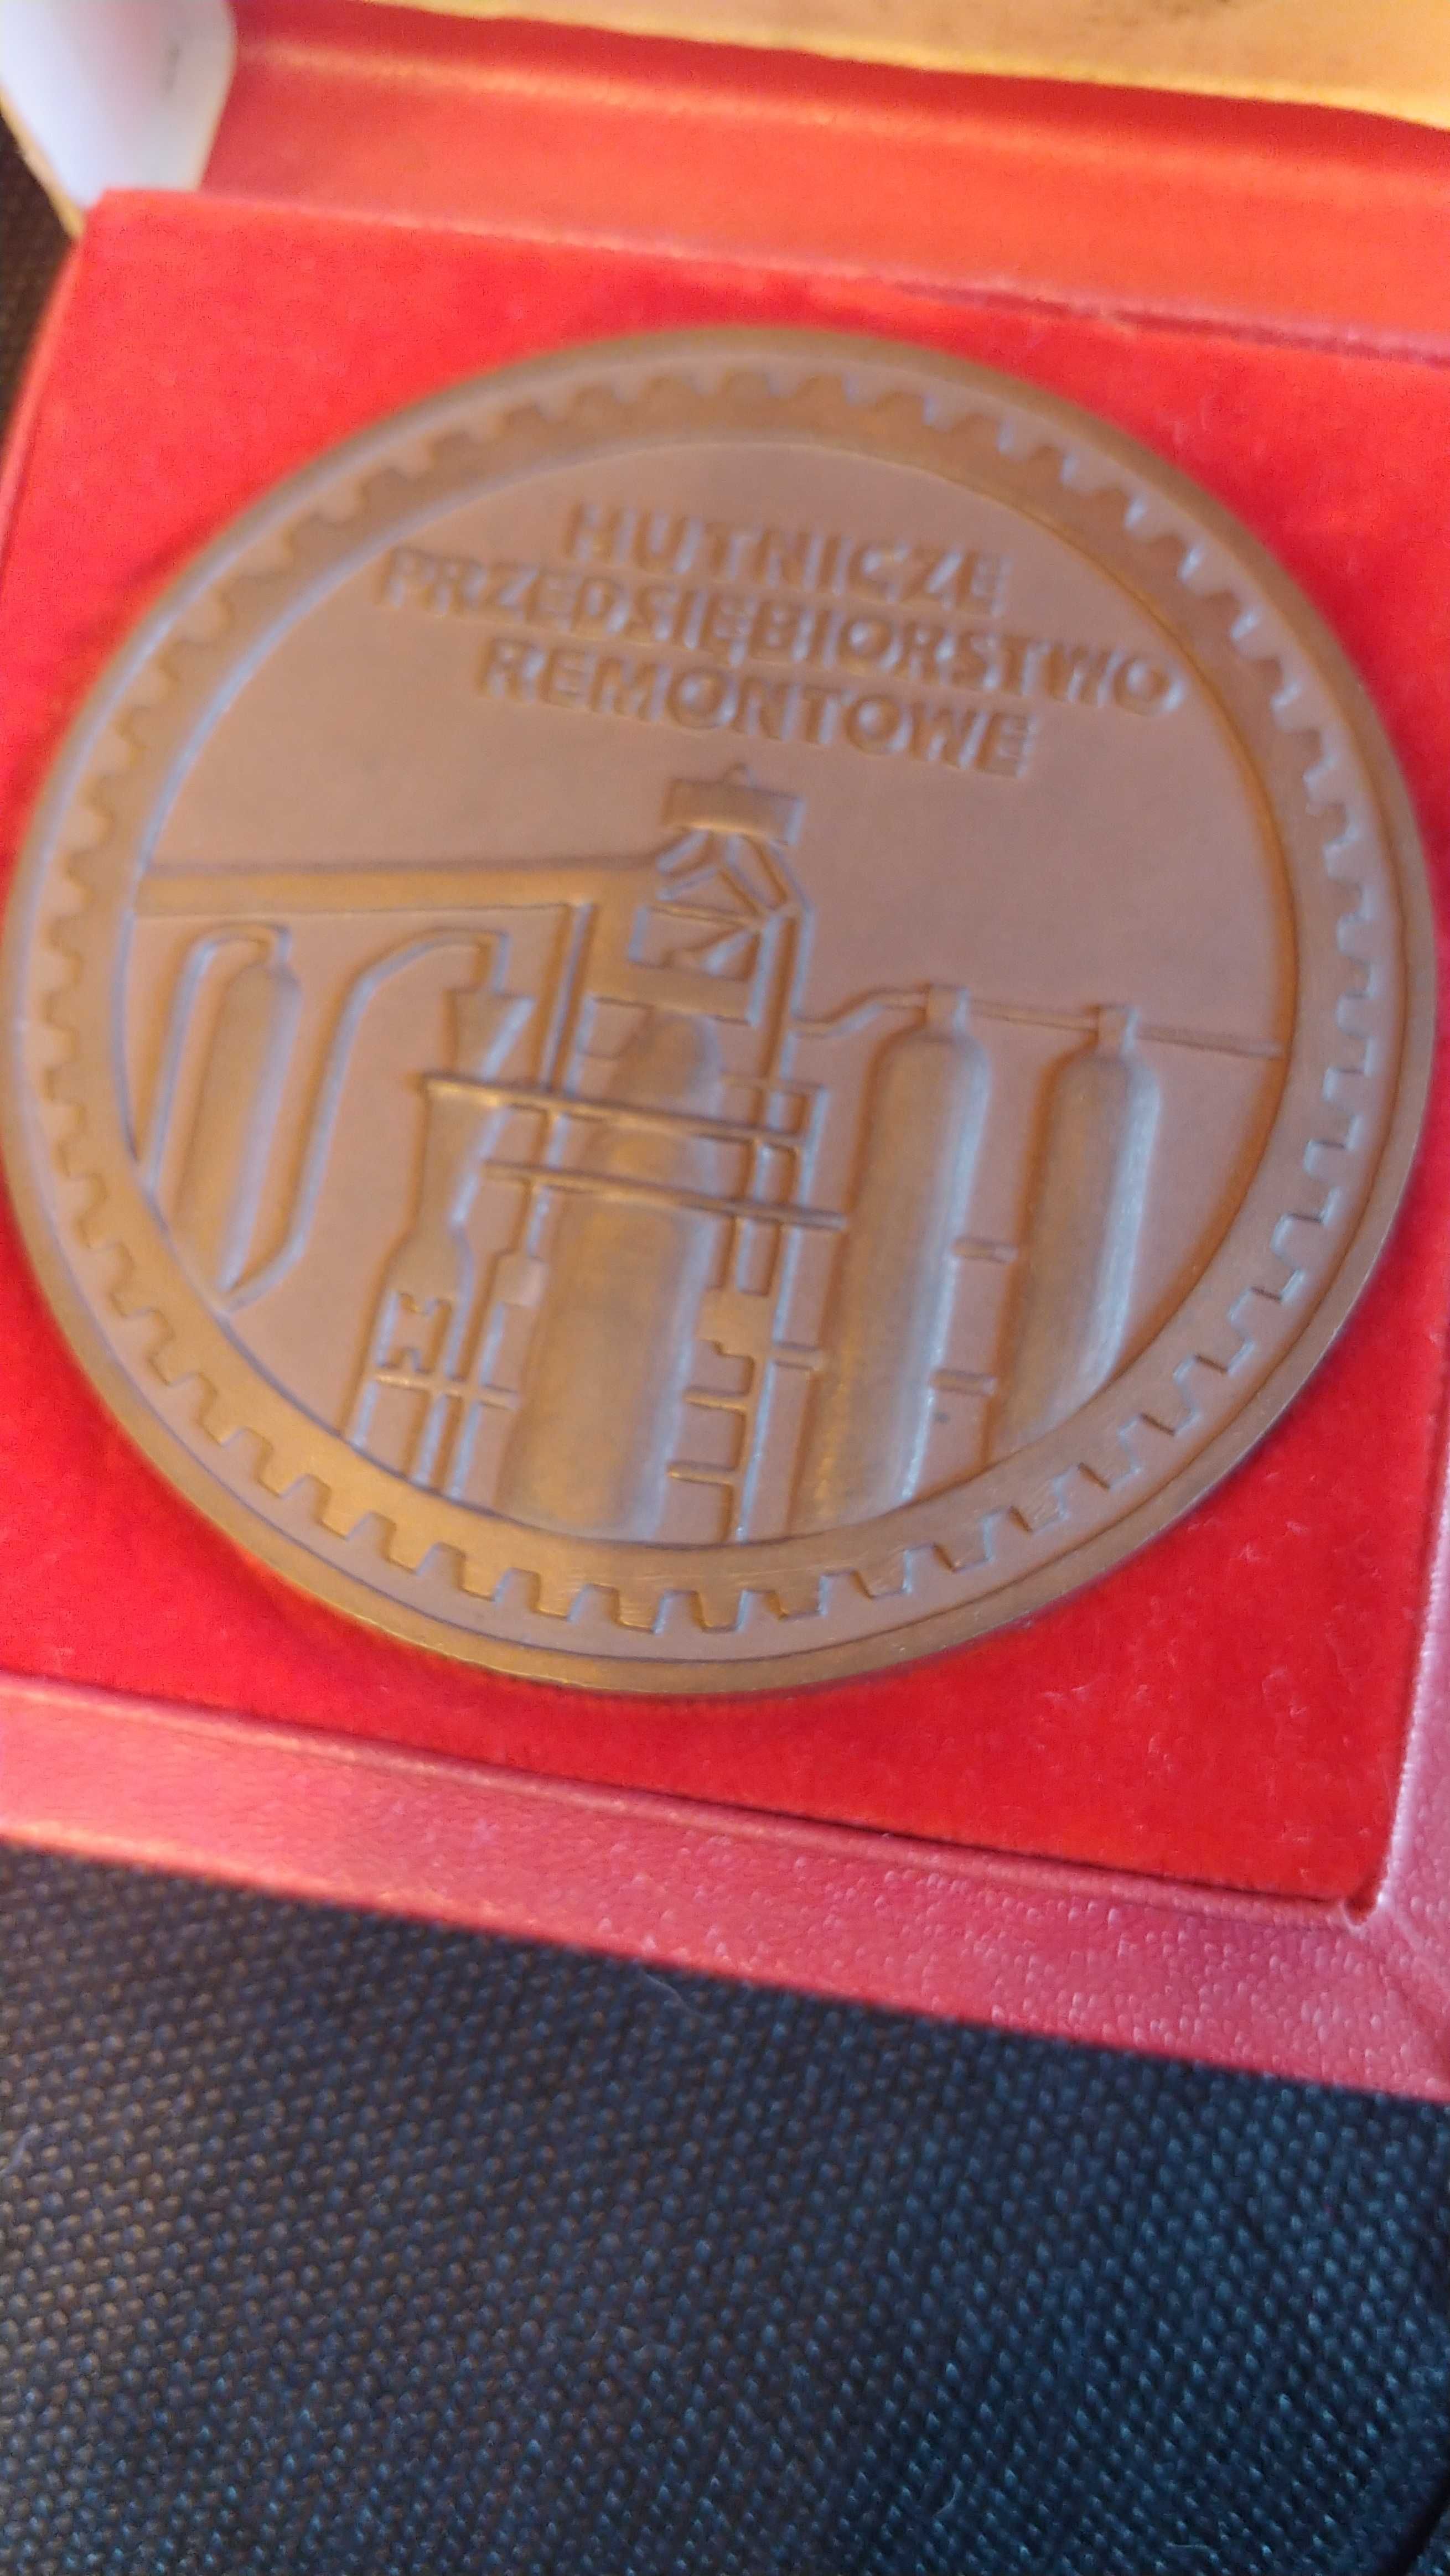 Medal zasłużony dla PR. Hutnicze przedsiębiorstwo remontowe.